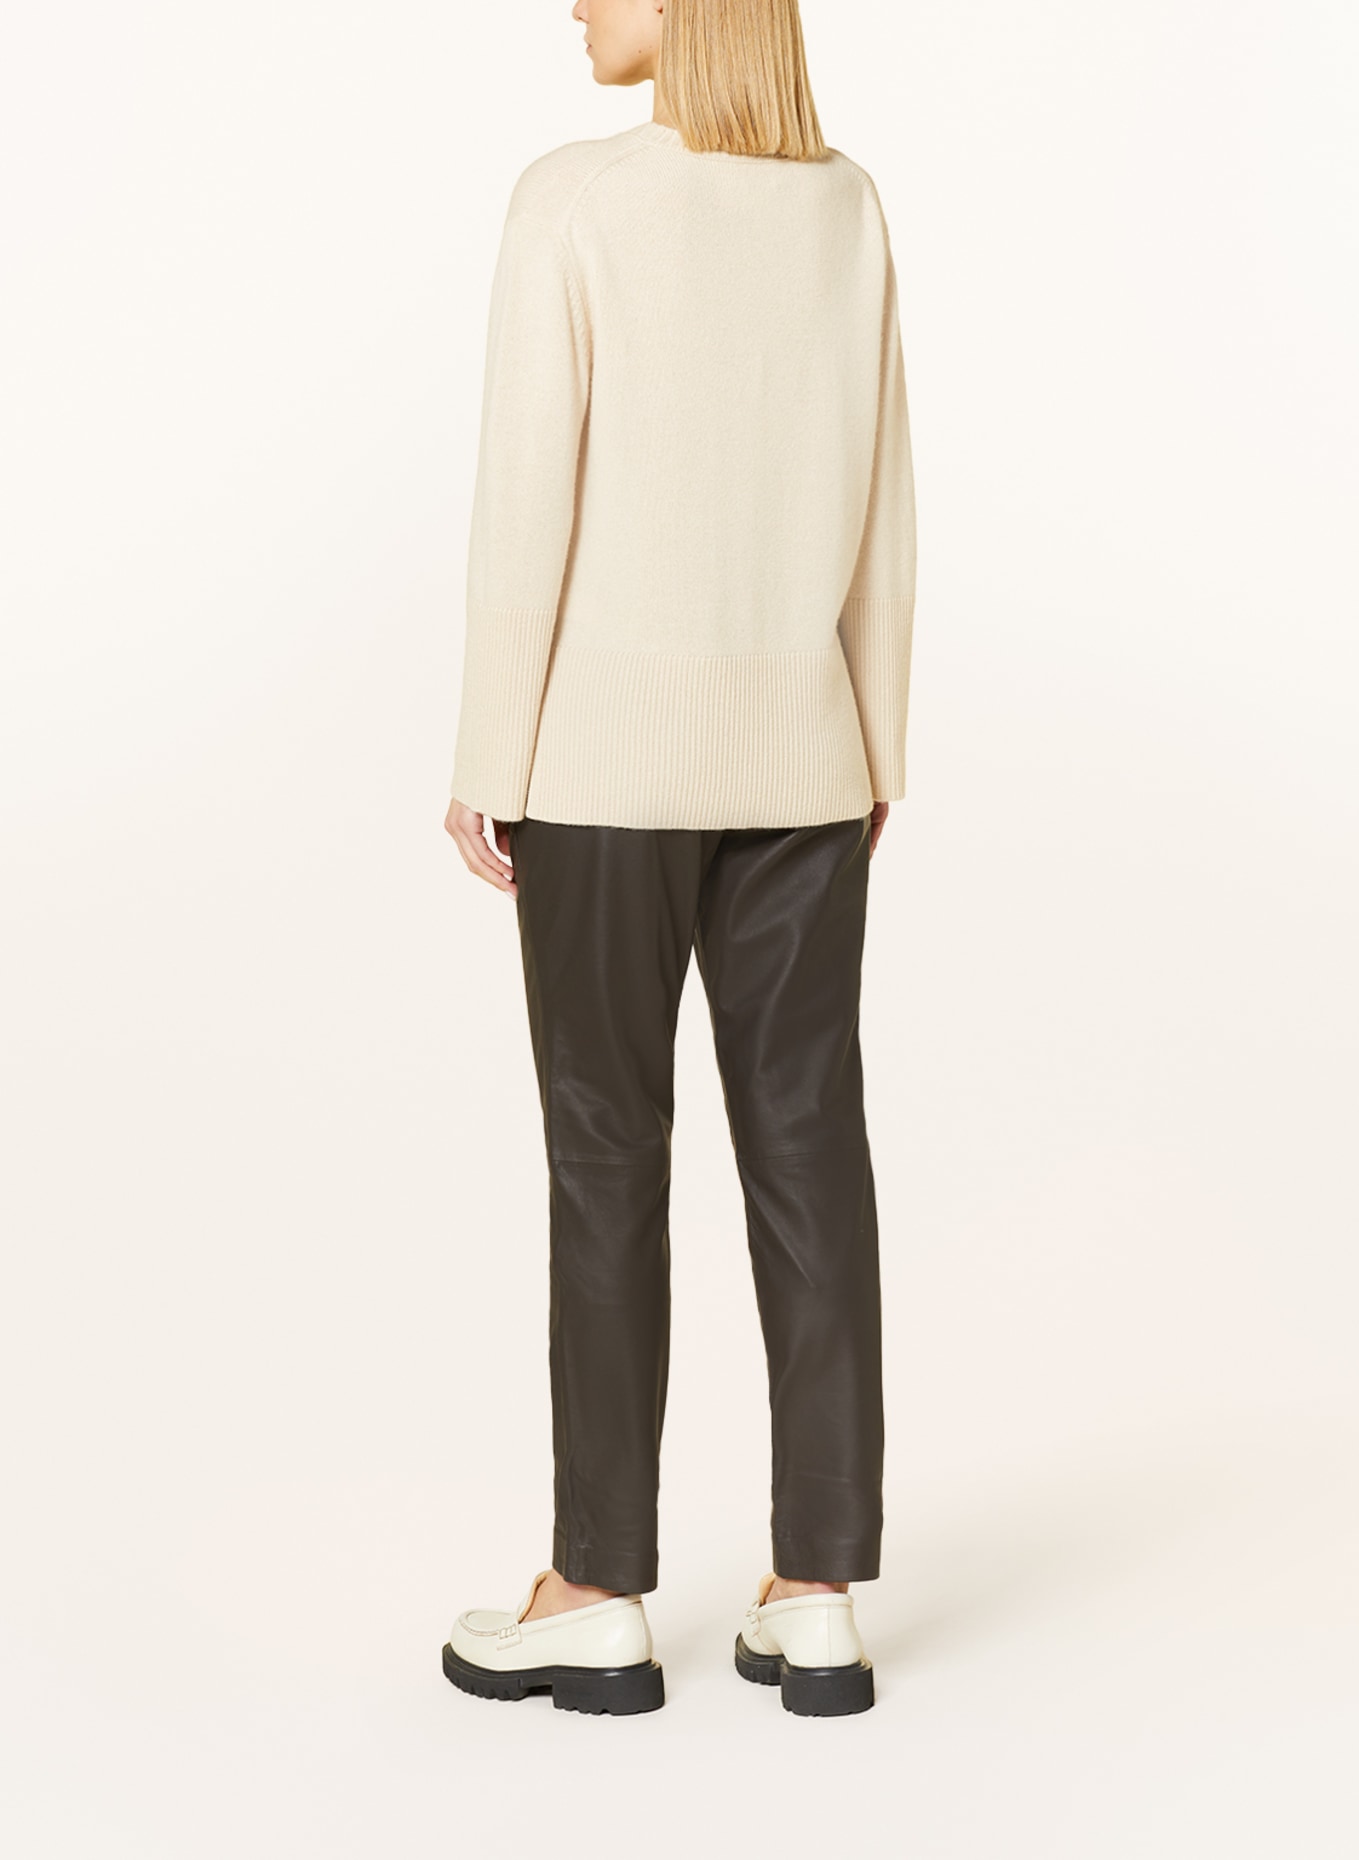 HEMISPHERE Cashmere sweater, Color: CREAM (Image 3)